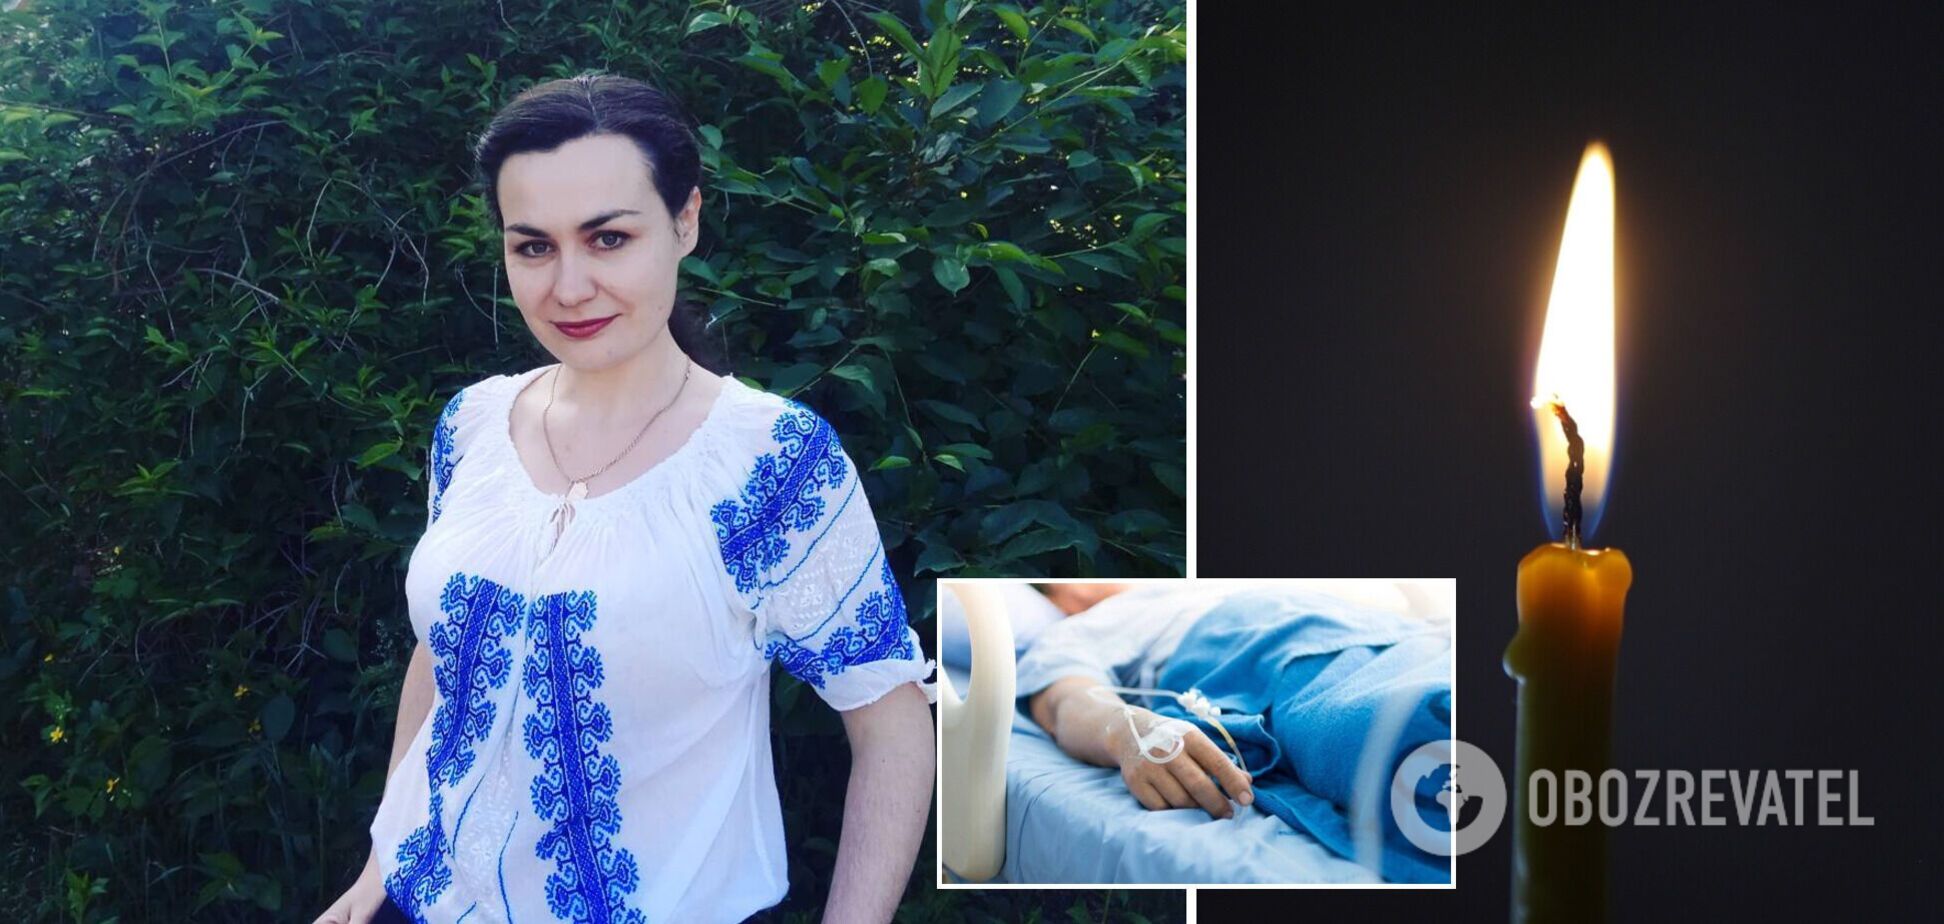 Відмовилася лягти до лікарні: у Києві від COVID-19 померла породілля, 11-денний малюк залишився без мами. Фото